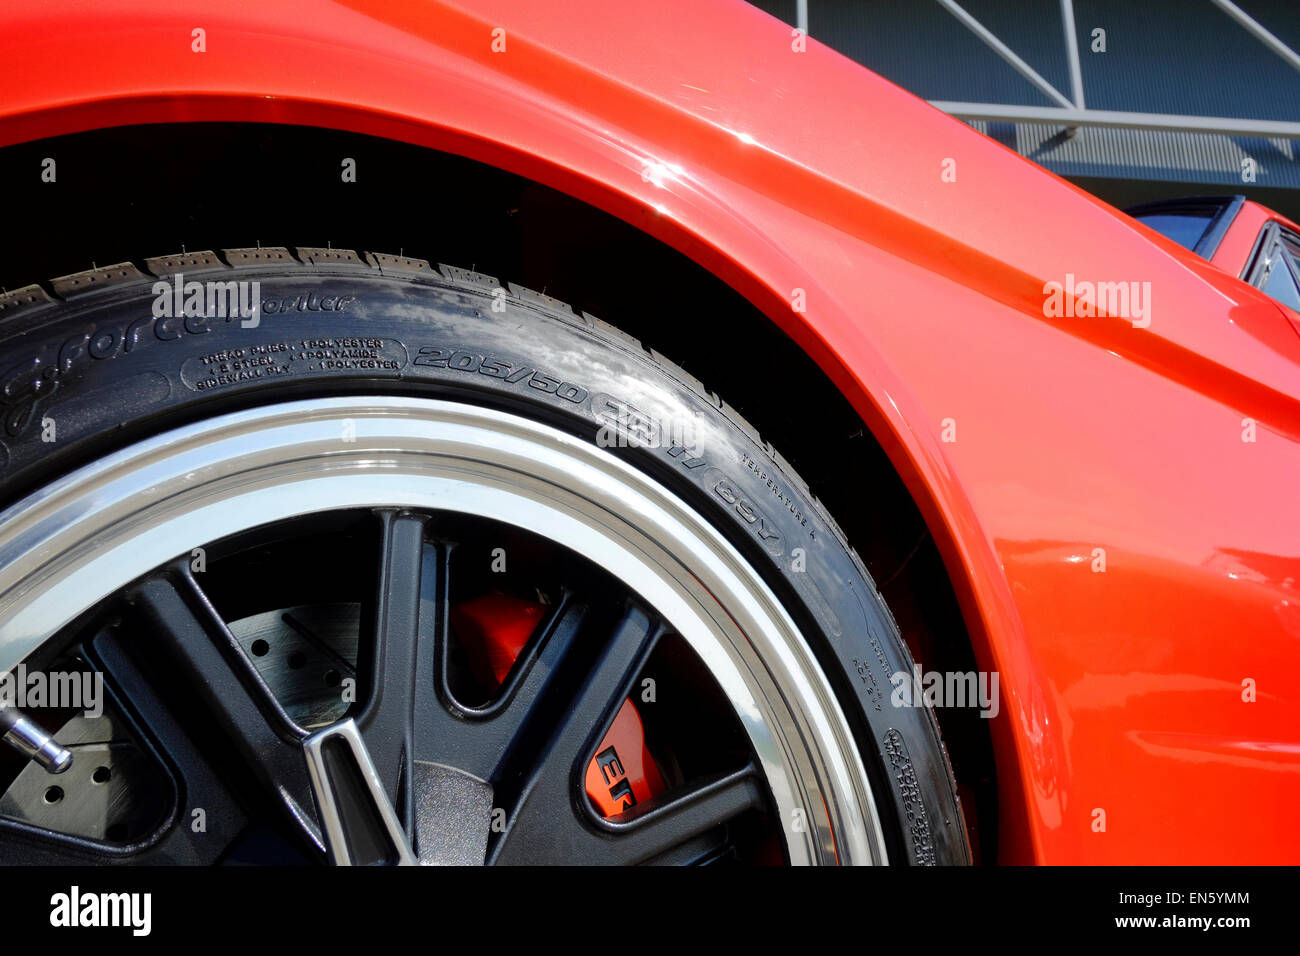 Détail de la roue d'une voiture de muscle Mustang rouge classique Banque D'Images